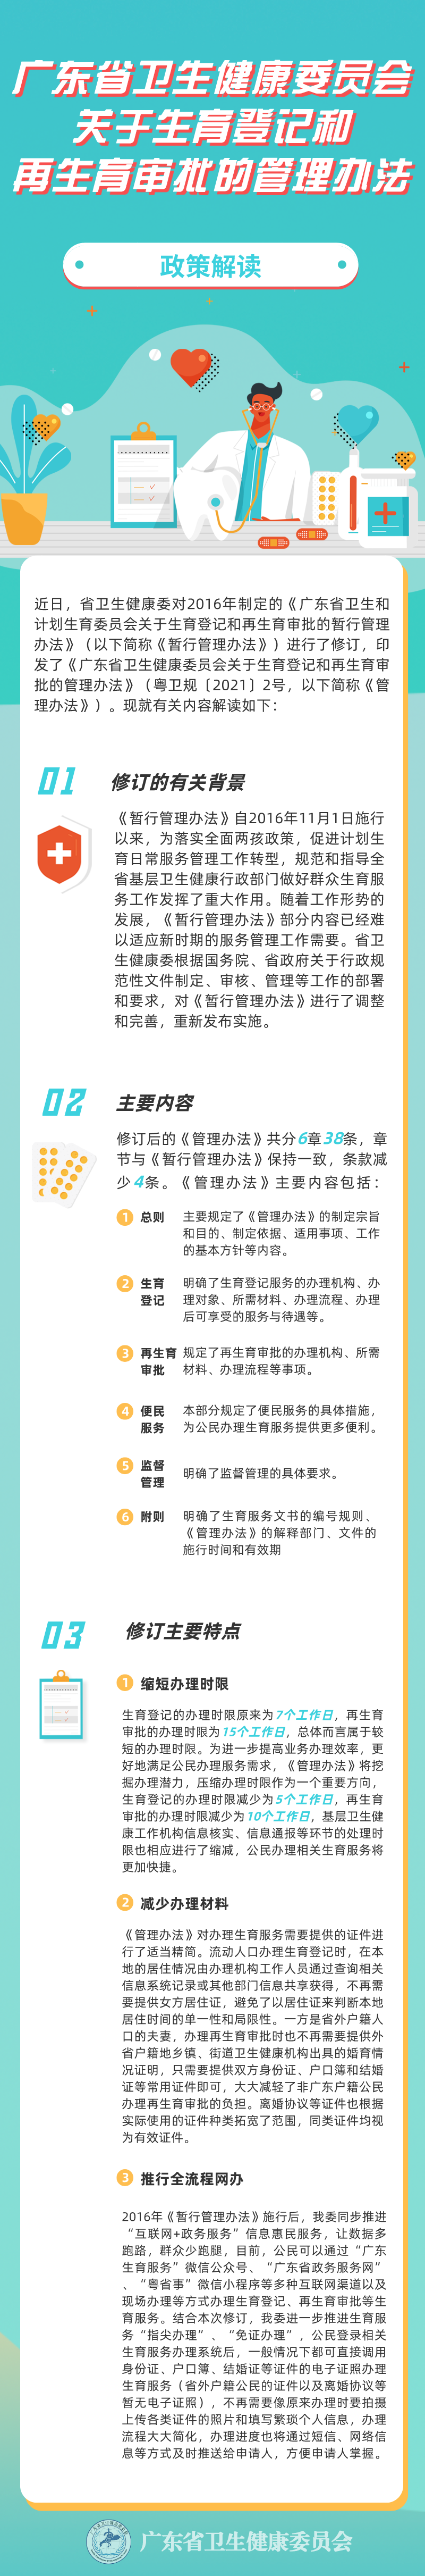 【图片解读】《广东省卫生健康委员会关于生育登记和再生育审批的管理办法》解读.png